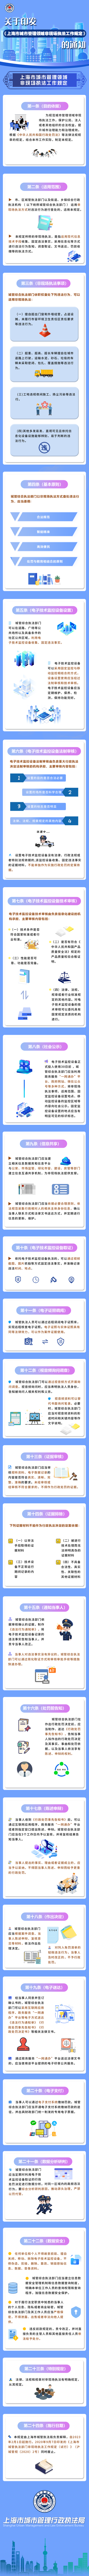 上海市城市管理领域非现场执法工作规定.png